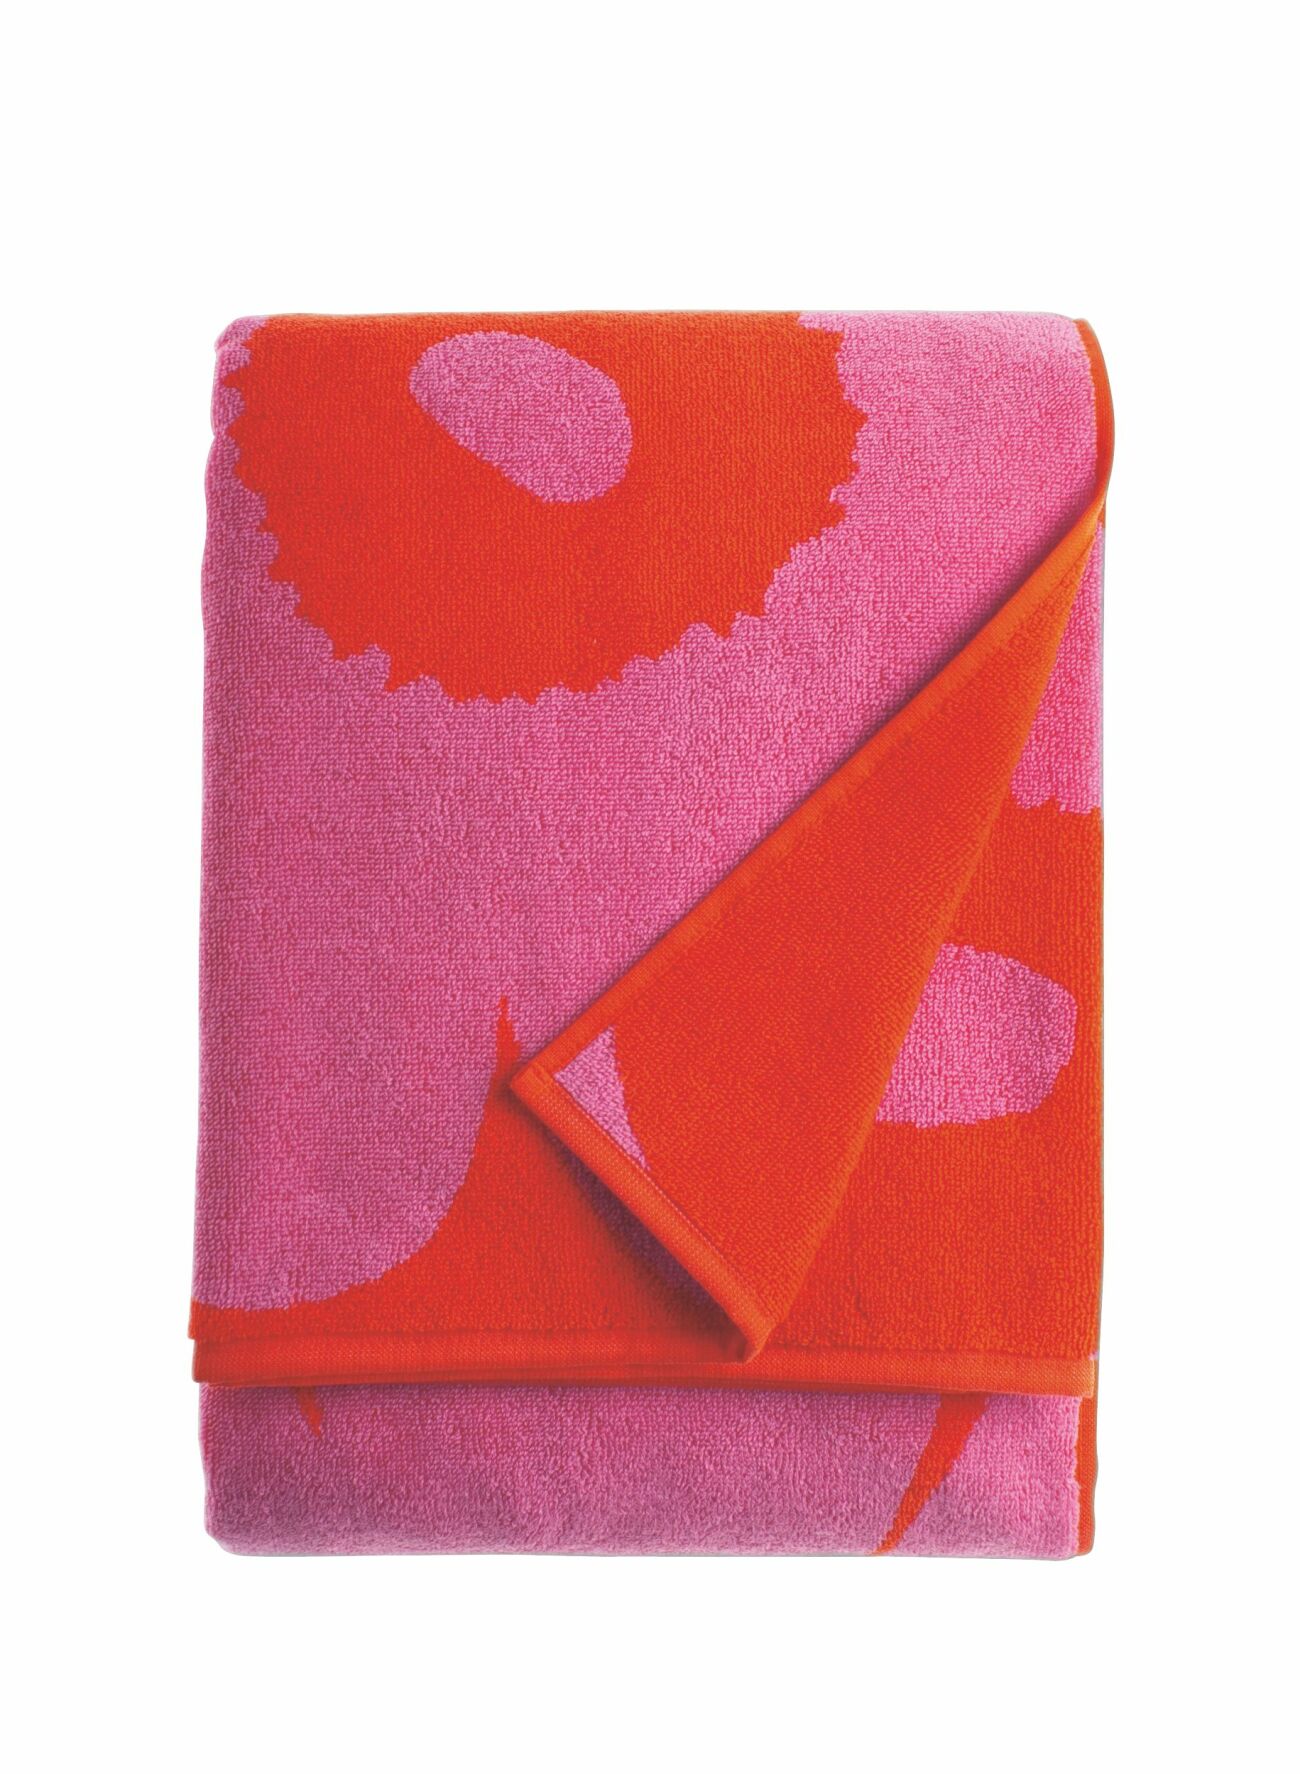 Rödrosa badlakan från Marimekko